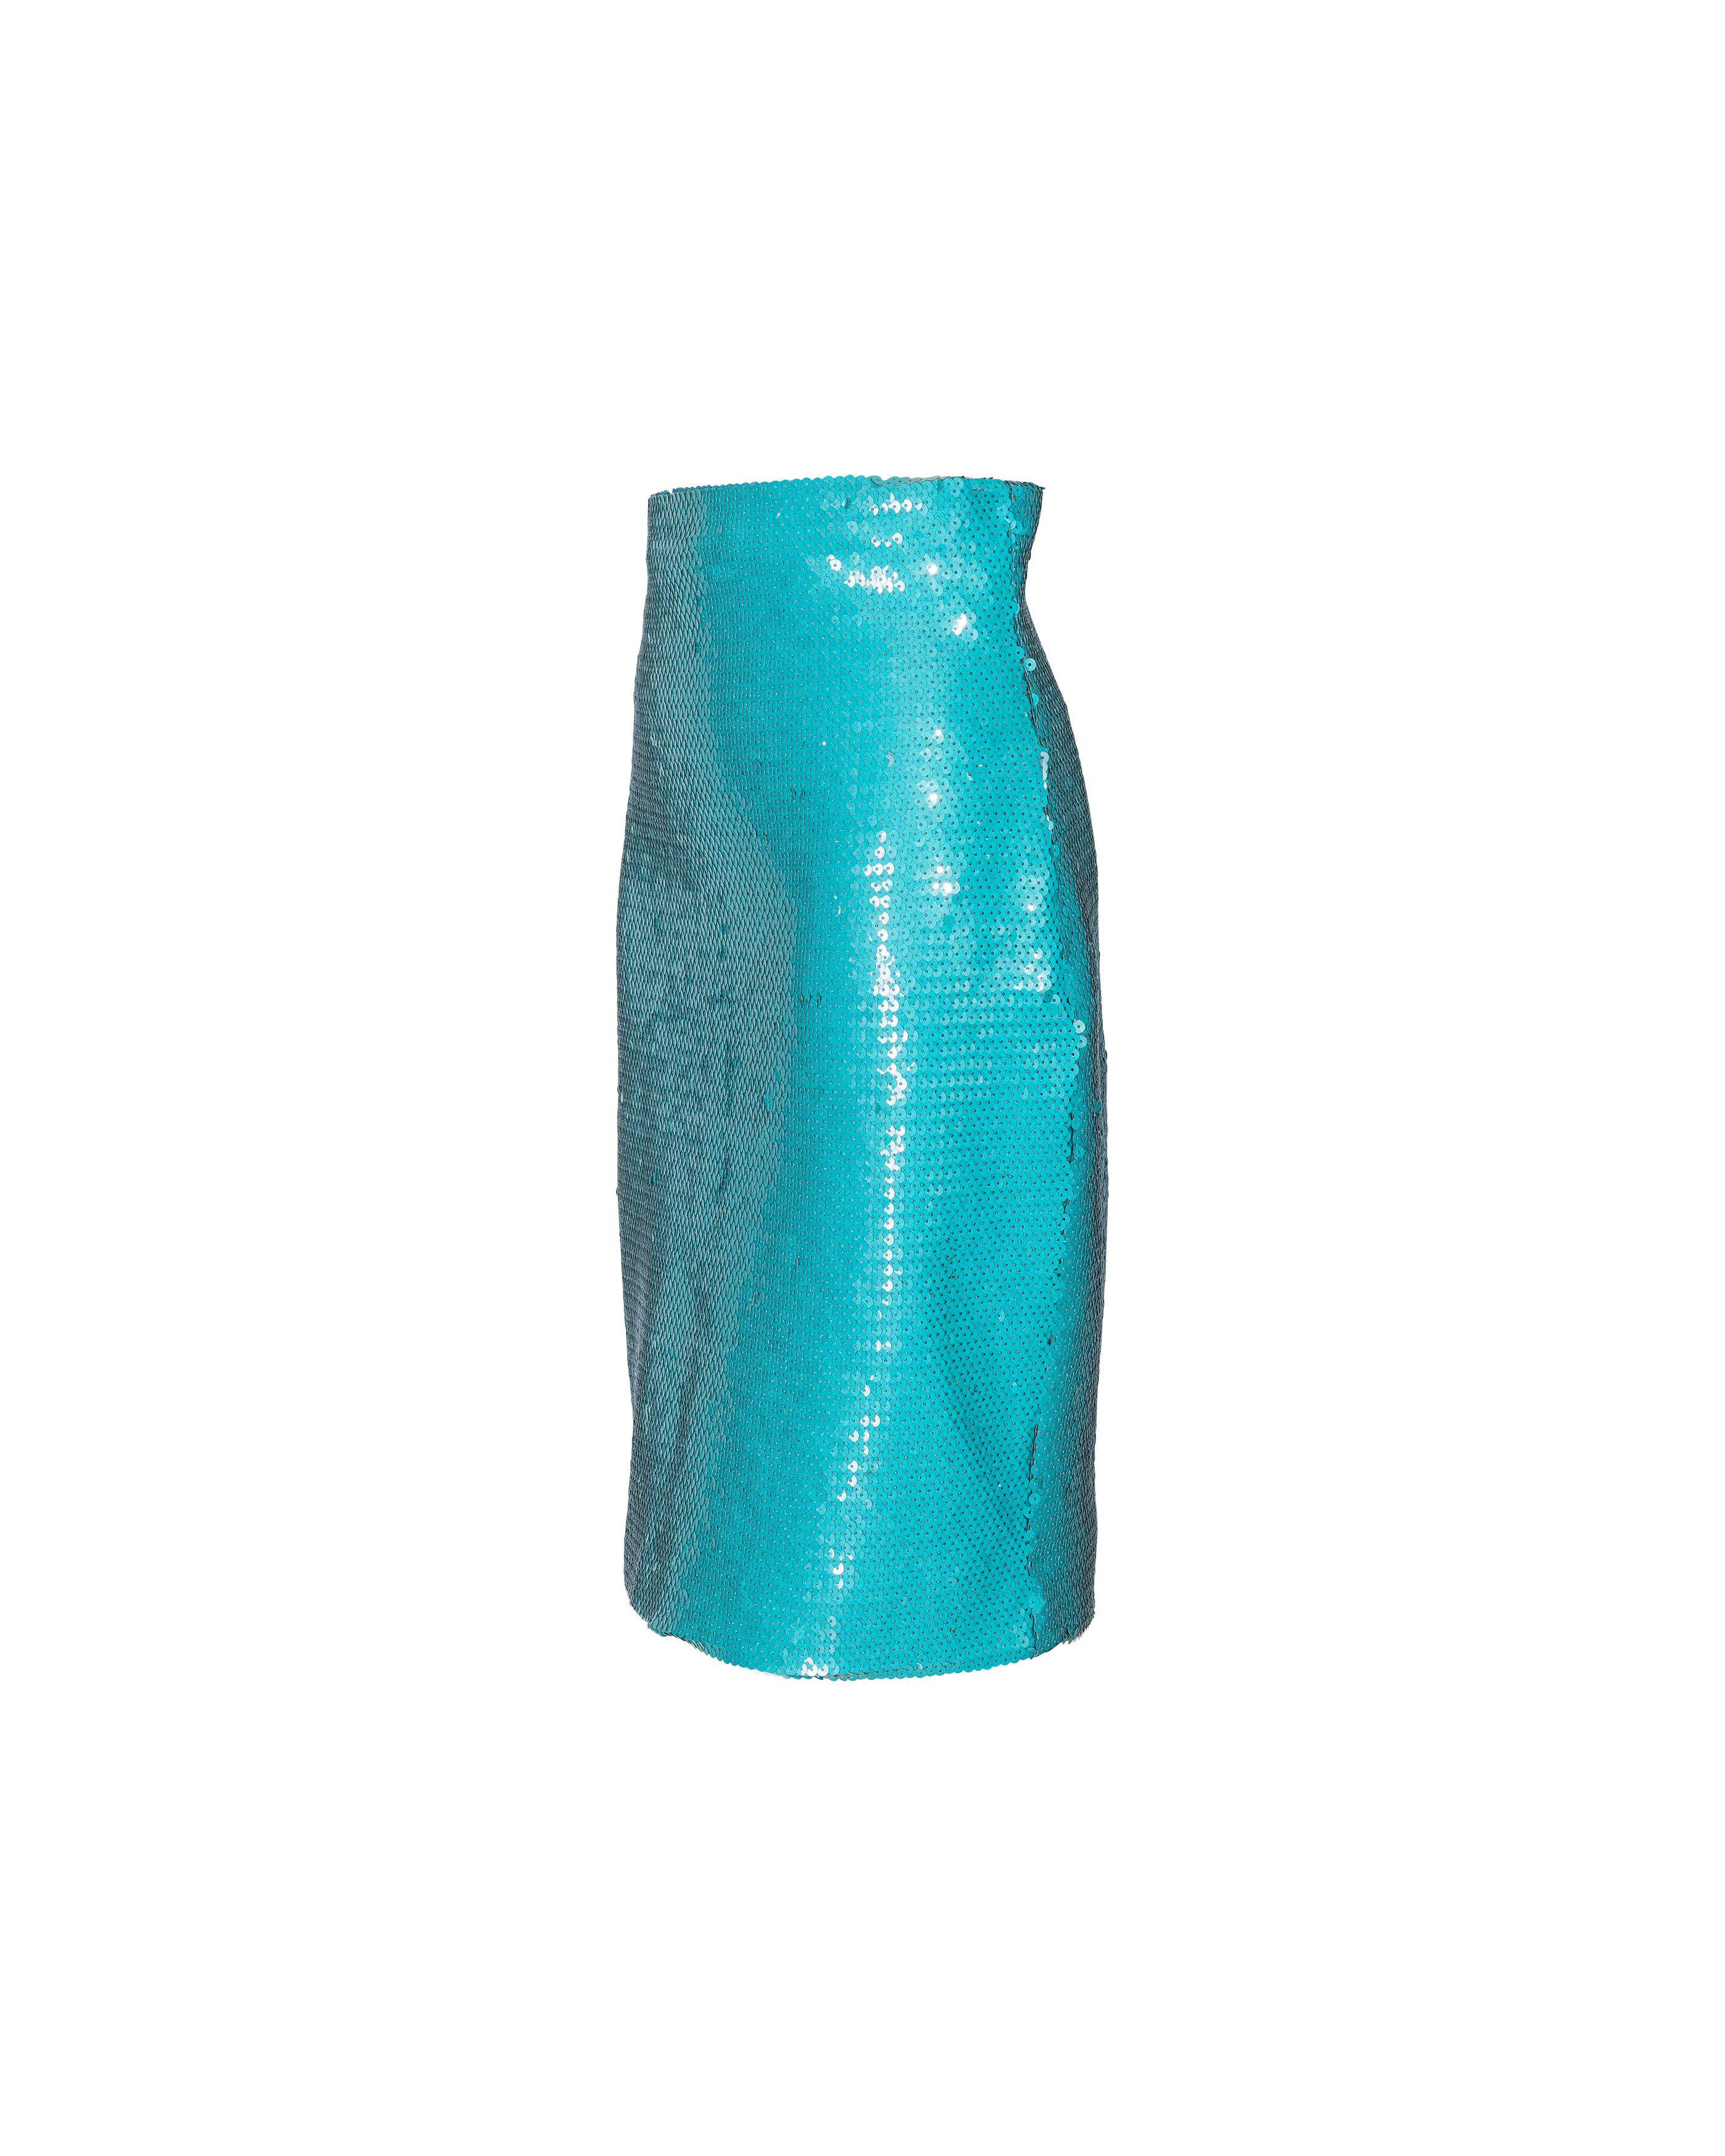 Jupe entièrement pailletée turquoise de Stephens des années 1980. Fermeture à glissière dissimulée au dos et petite fente centrale au dos. L'arrondi sur les côtés et la largeur des hanches créent une silhouette 